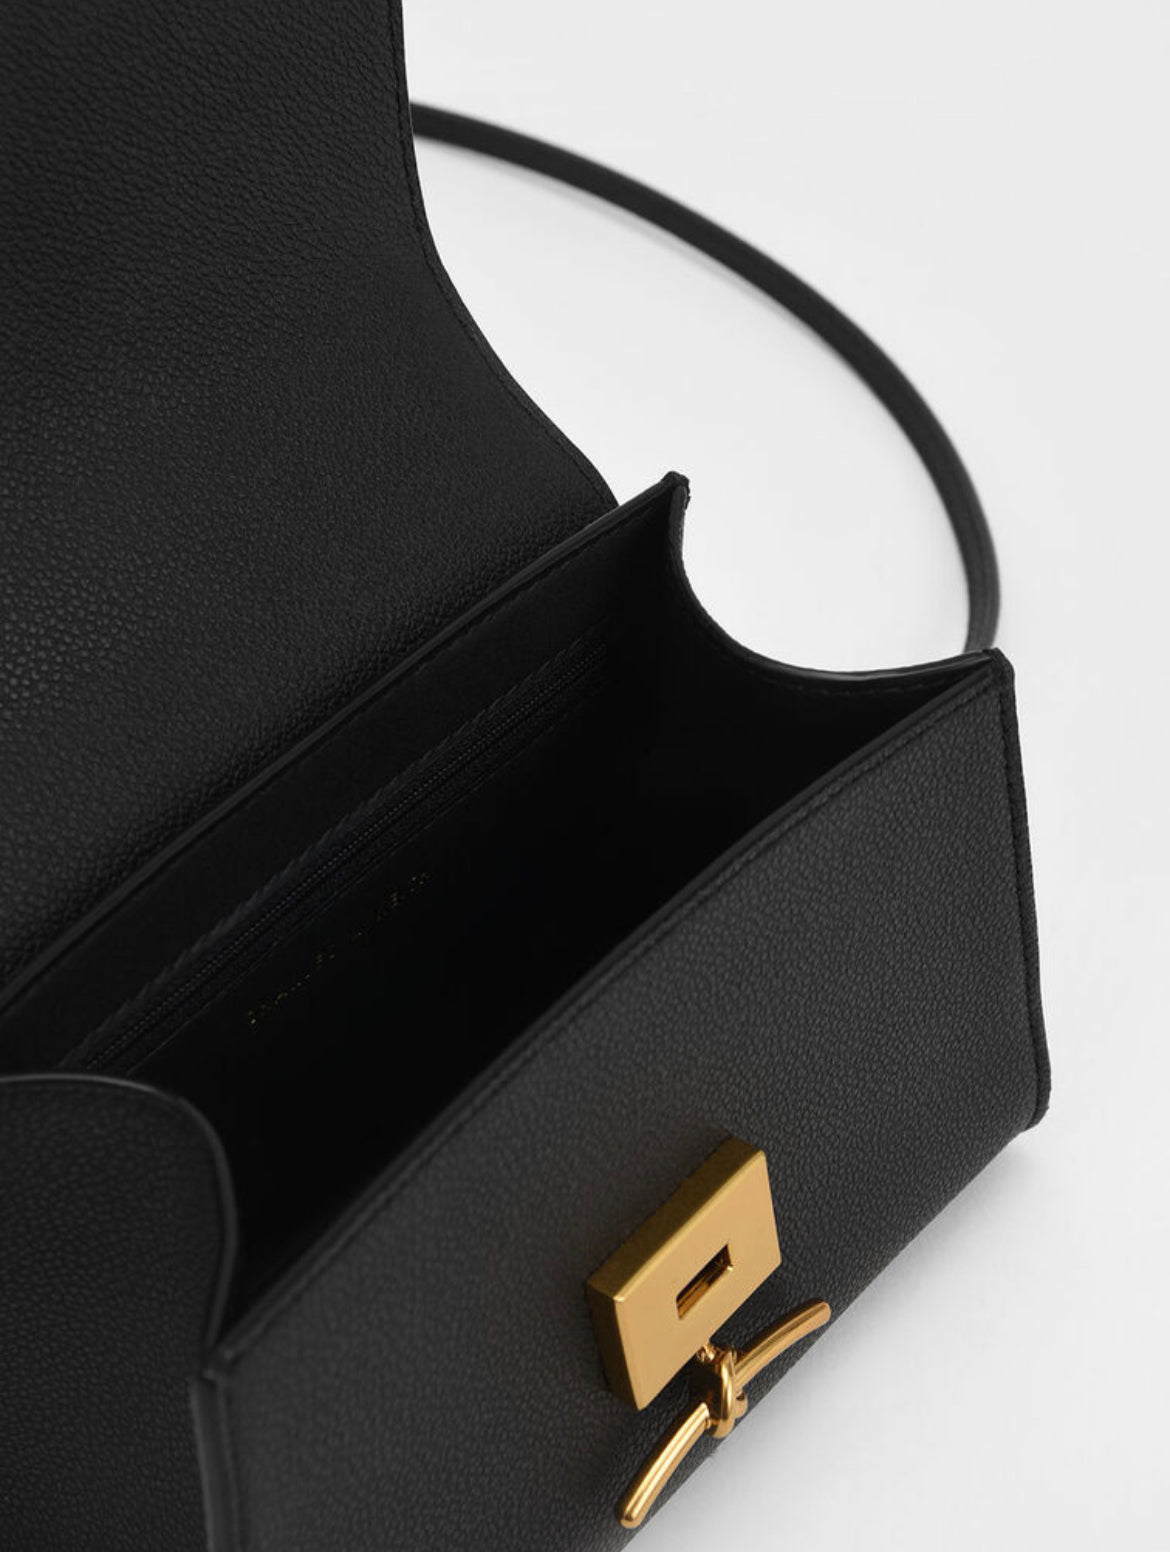 Huxley Metallic Push-Lock Top Handle Bag - Black